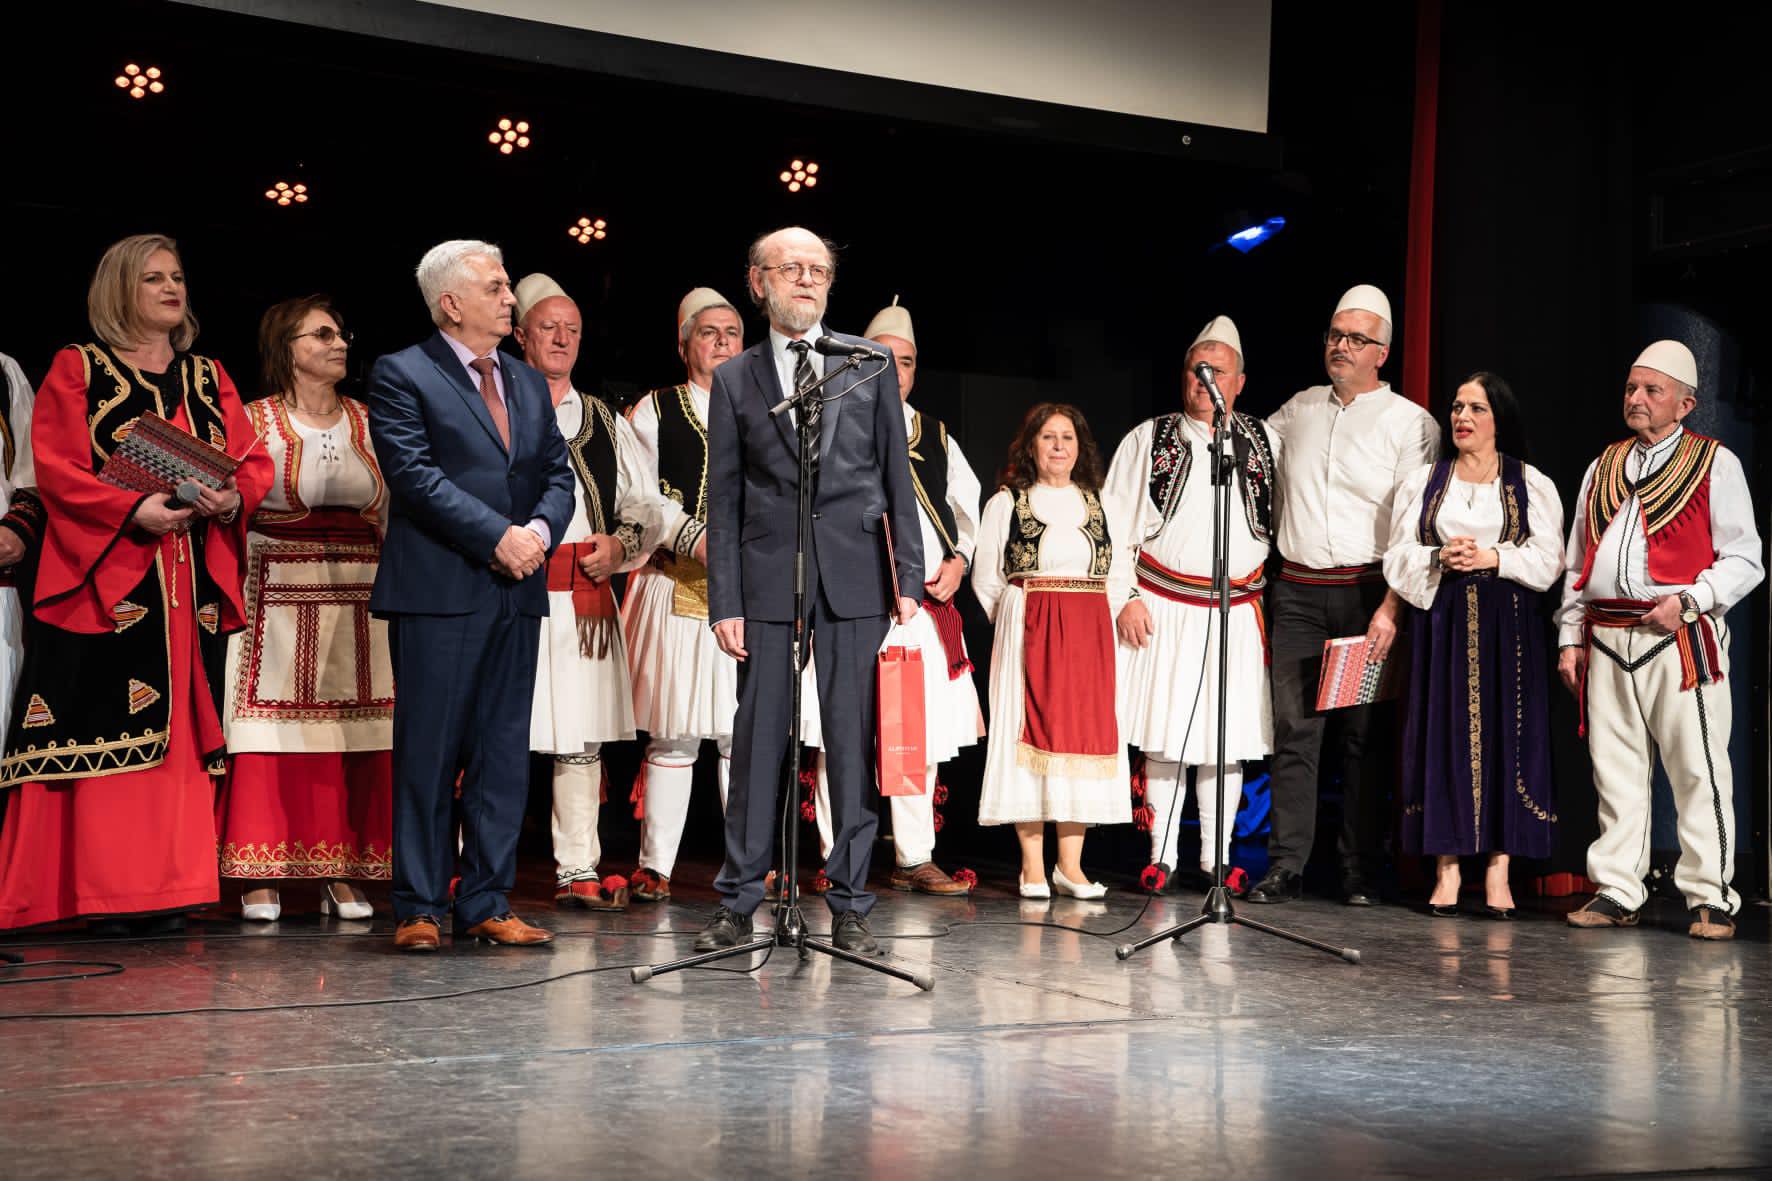 Valle e këngë tradicionale shqipe në koncertin artistik në Gjenevë